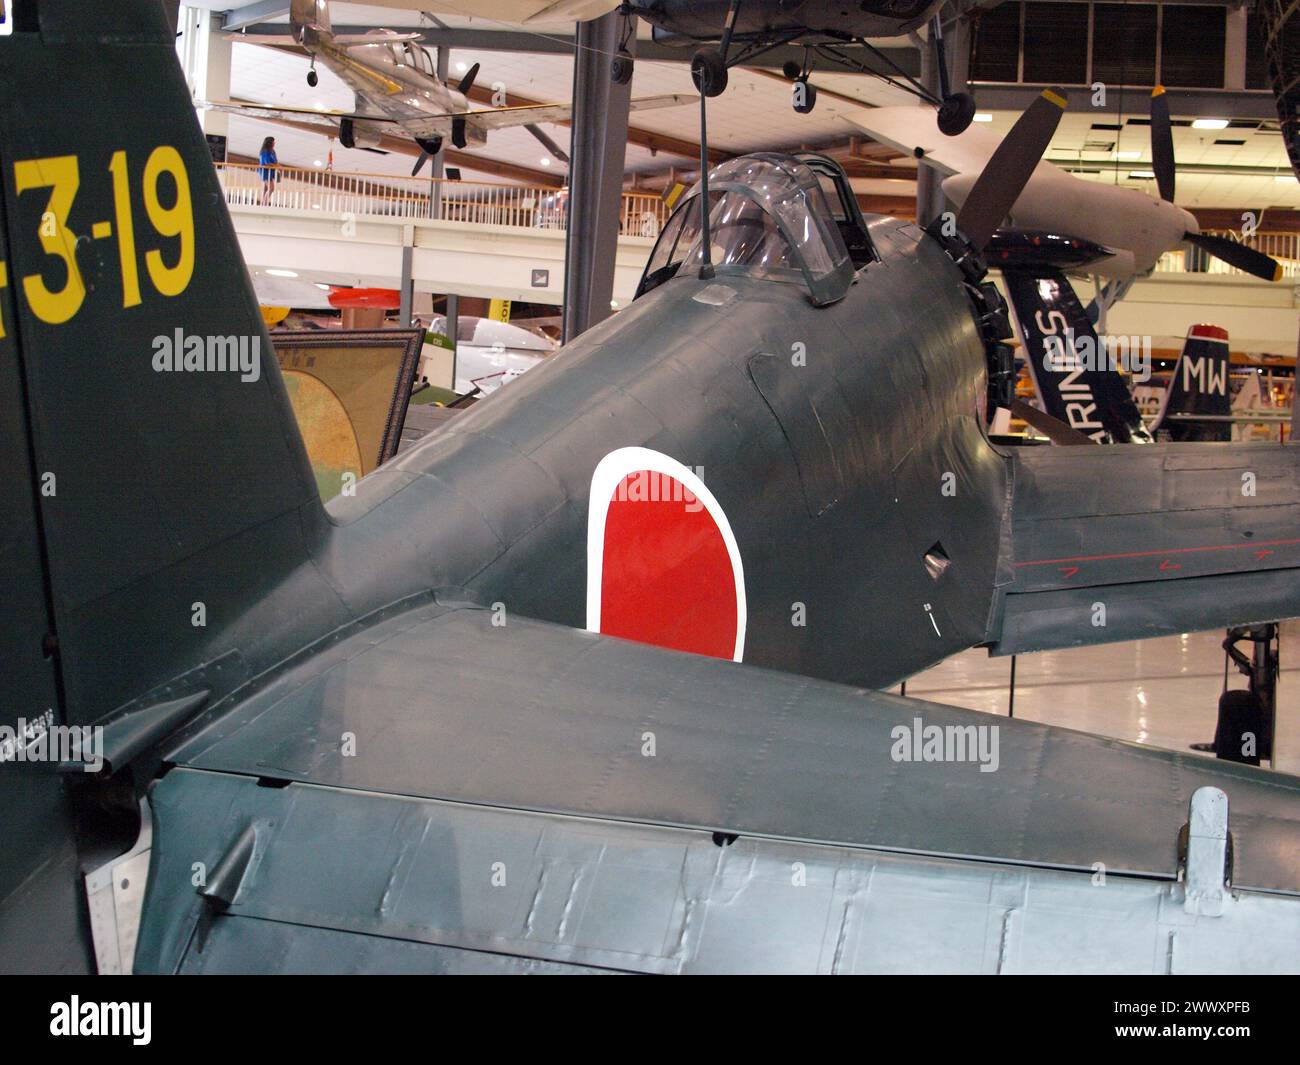 Pensacola, Florida, Stati Uniti - 10 agosto 2012: Aereo da caccia giapponese dalla seconda guerra mondiale al National Naval Aviation Museum. Foto Stock